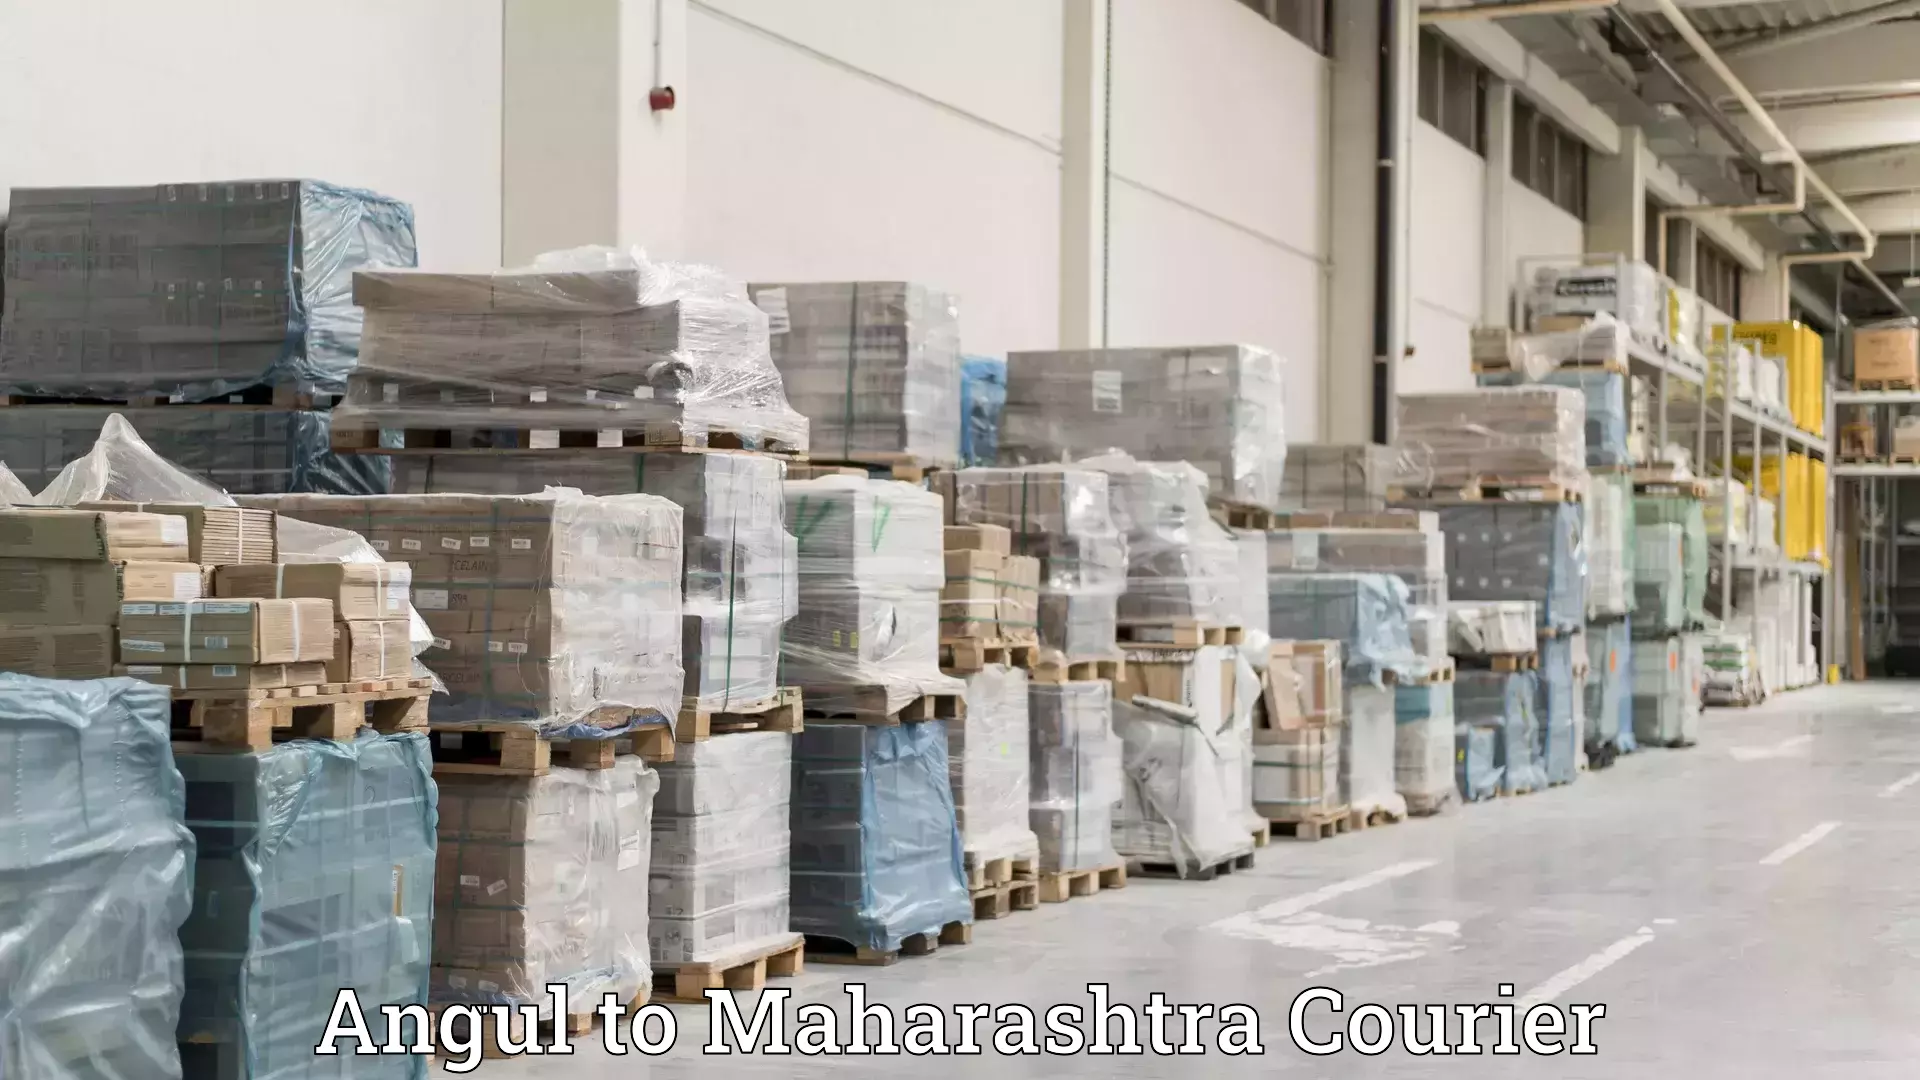 Trusted furniture movers Angul to Maharashtra